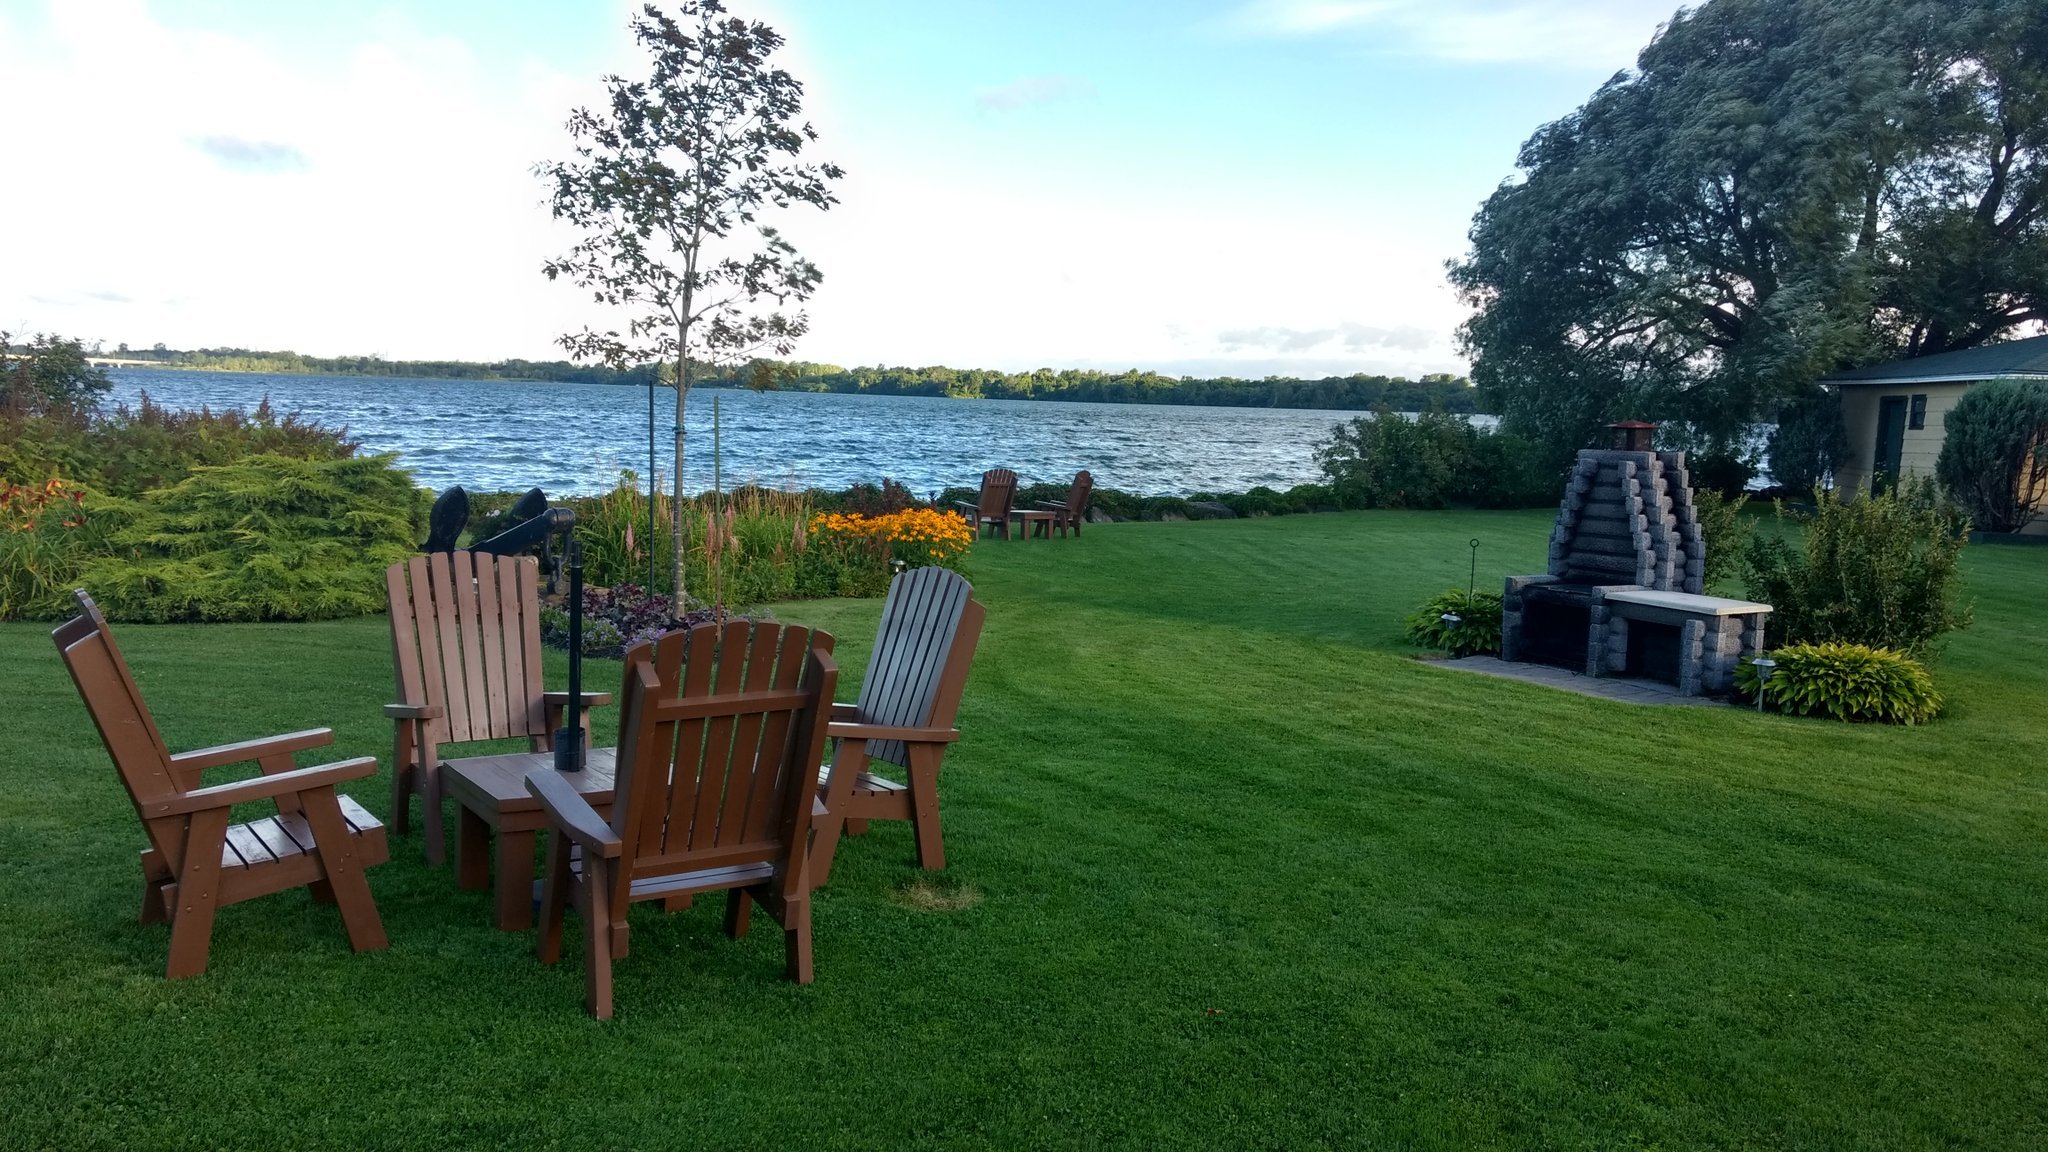 Vue charmante d'une pelouse au bord d'un lac, avec une table de jardin et un barbecue